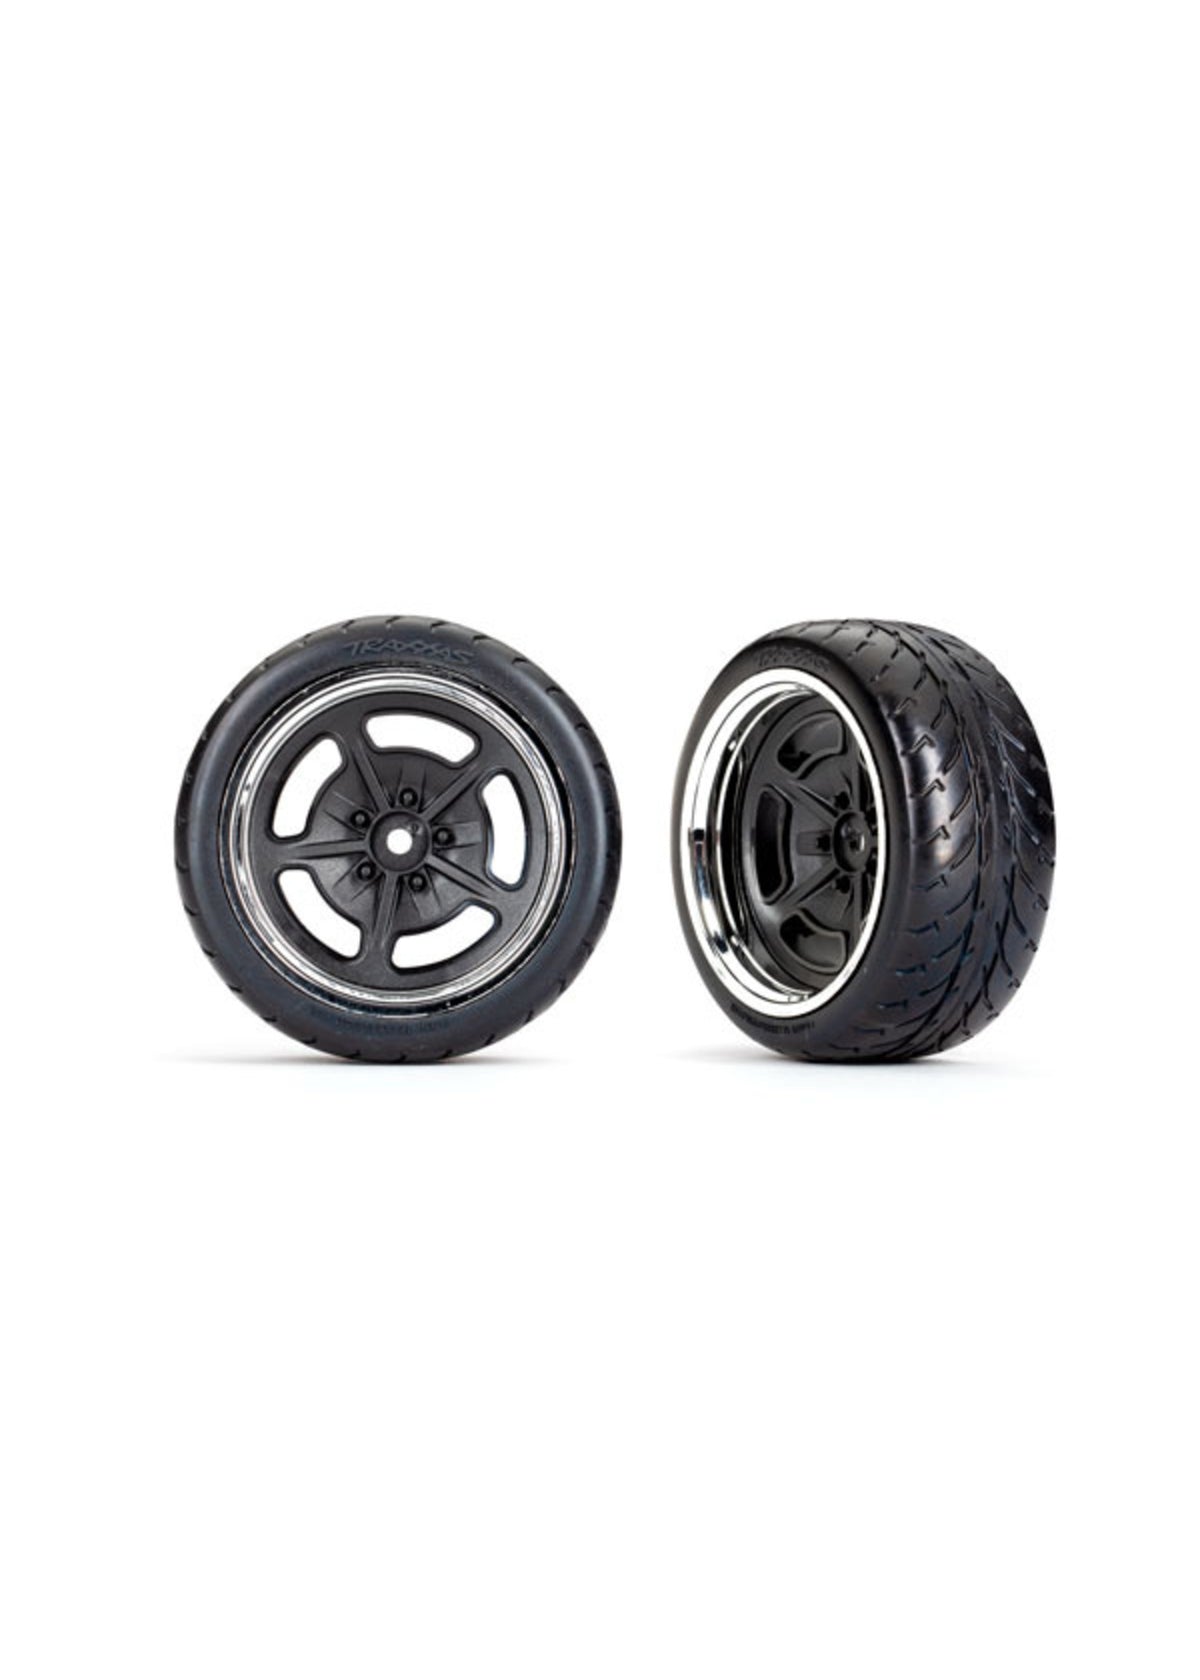 TRX9373 T&W Split Spoke Black CHRM Wheel Response Tire Rear - 9373